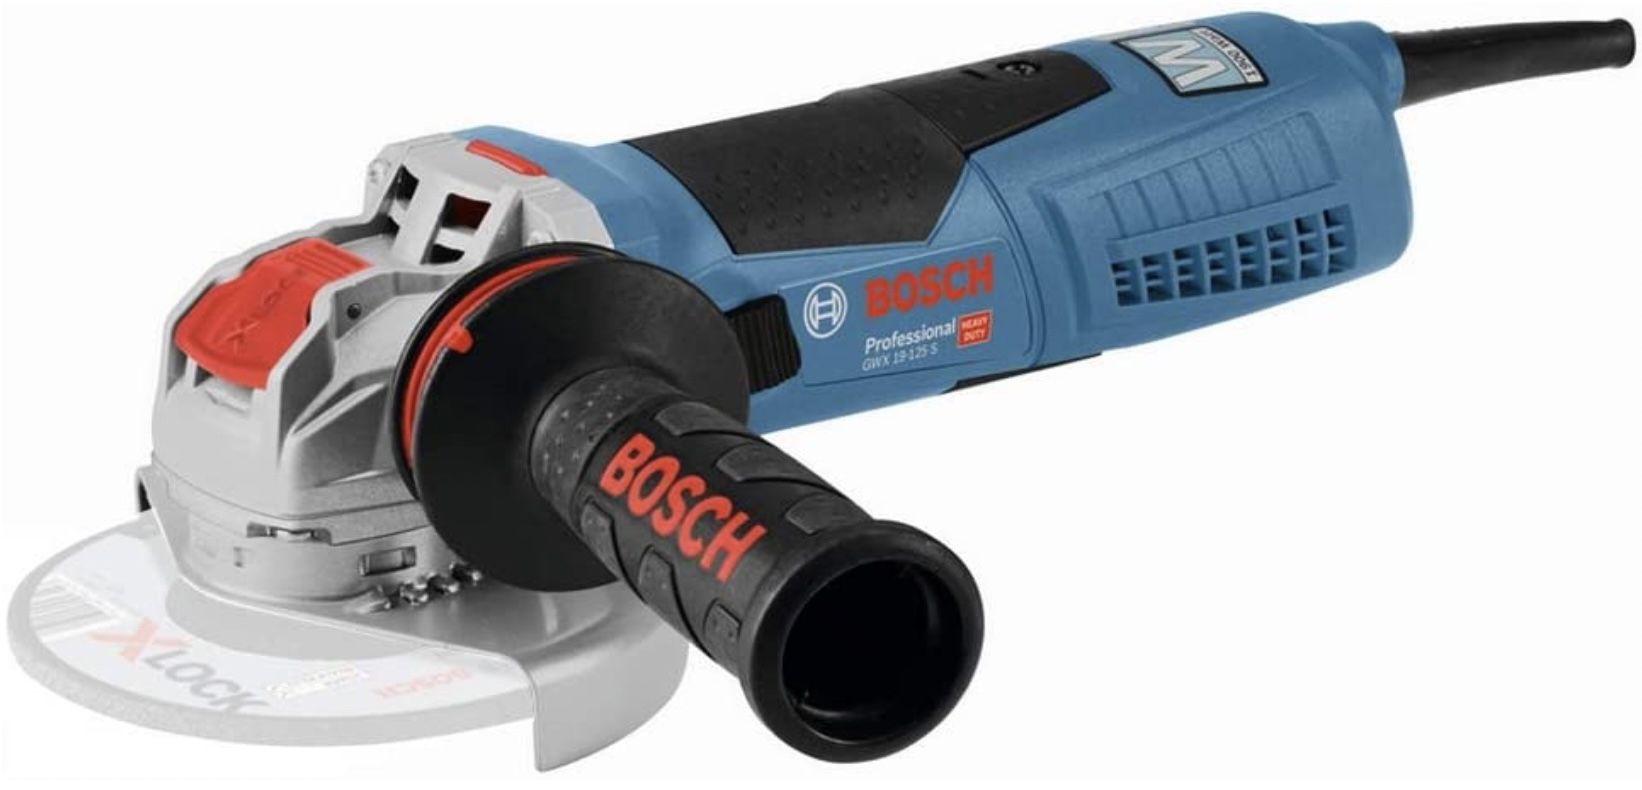 Bosch GWX 19 125 S Professional Winkelschleifer inkl. Anti Vibrationshandgriff für 139€ (statt 170€)